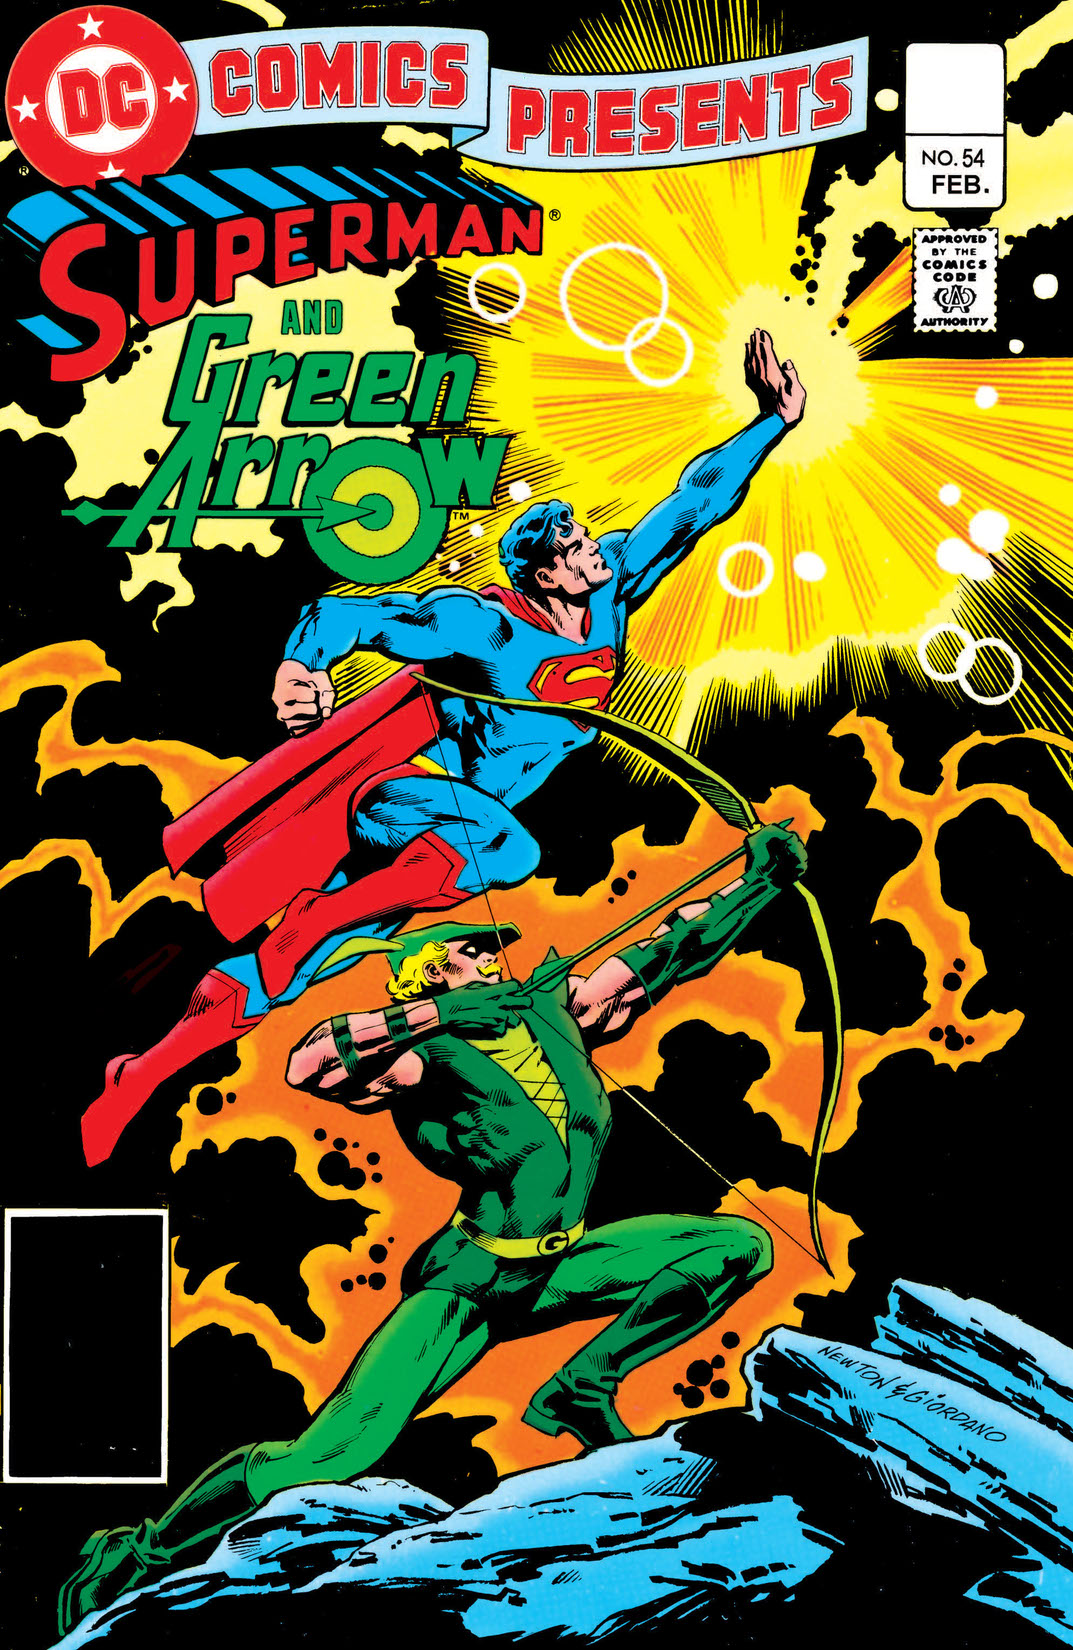 DC Comics Presents (1978-1986) #54 preview images